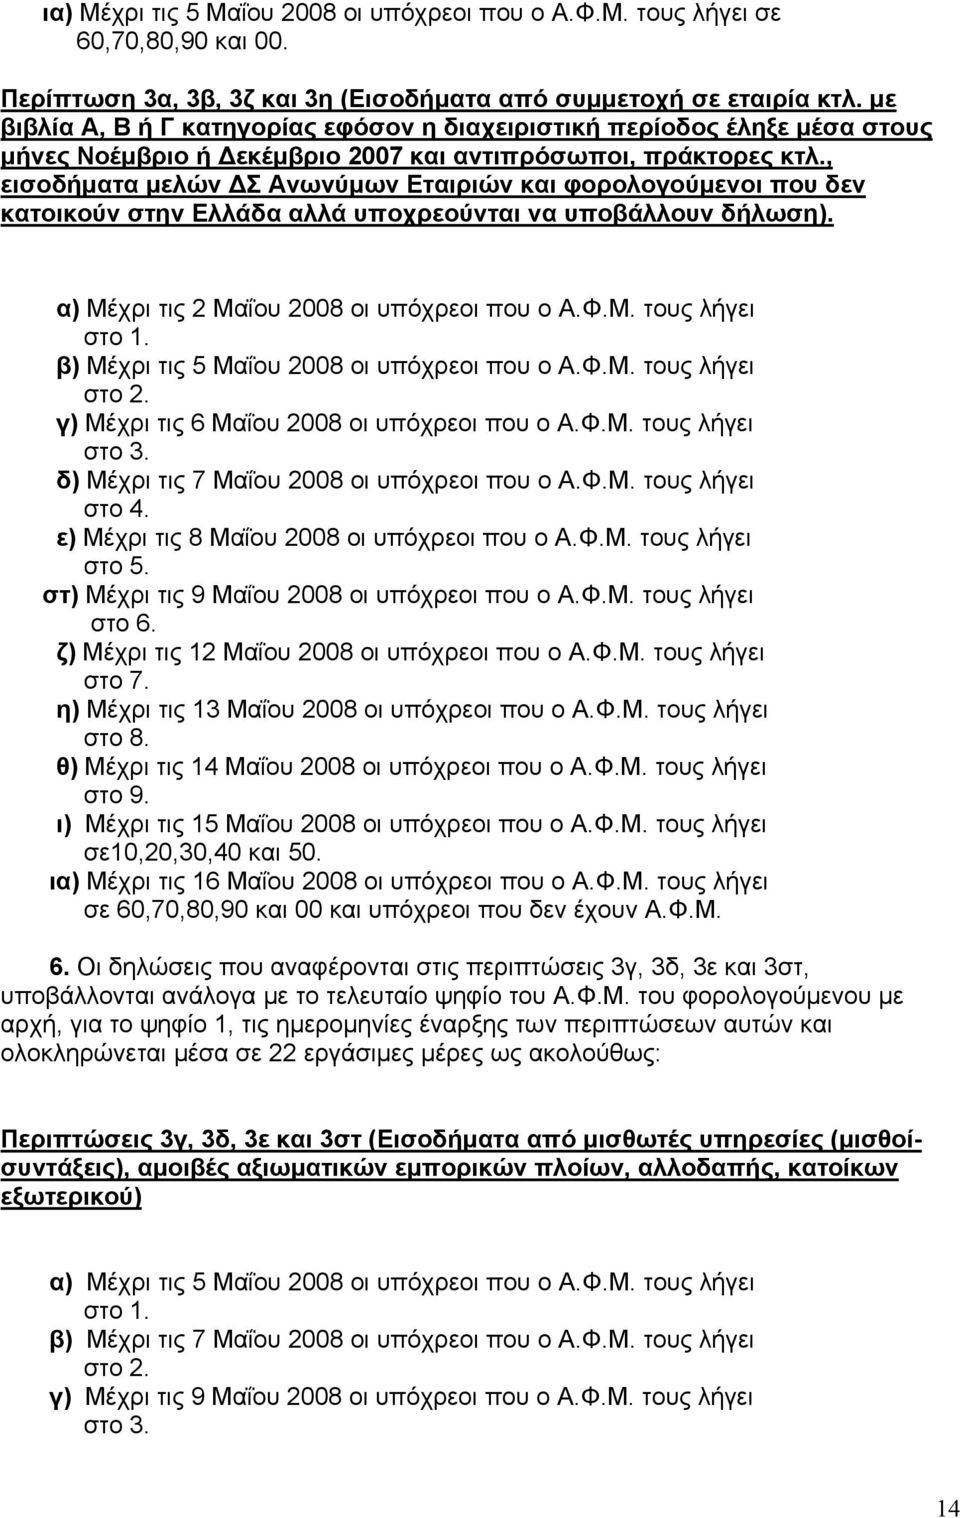 , εισοδήματα μελών ΔΣ Ανωνύμων Εταιριών και φορολογούμενοι που δεν κατοικούν στην Ελλάδα αλλά υποχρεούνται να υποβάλλουν δήλωση). α) Μέχρι τις 2 Μαΐου 2008 οι υπόχρεοι που ο Α.Φ.Μ. τους λήγει στο 1.